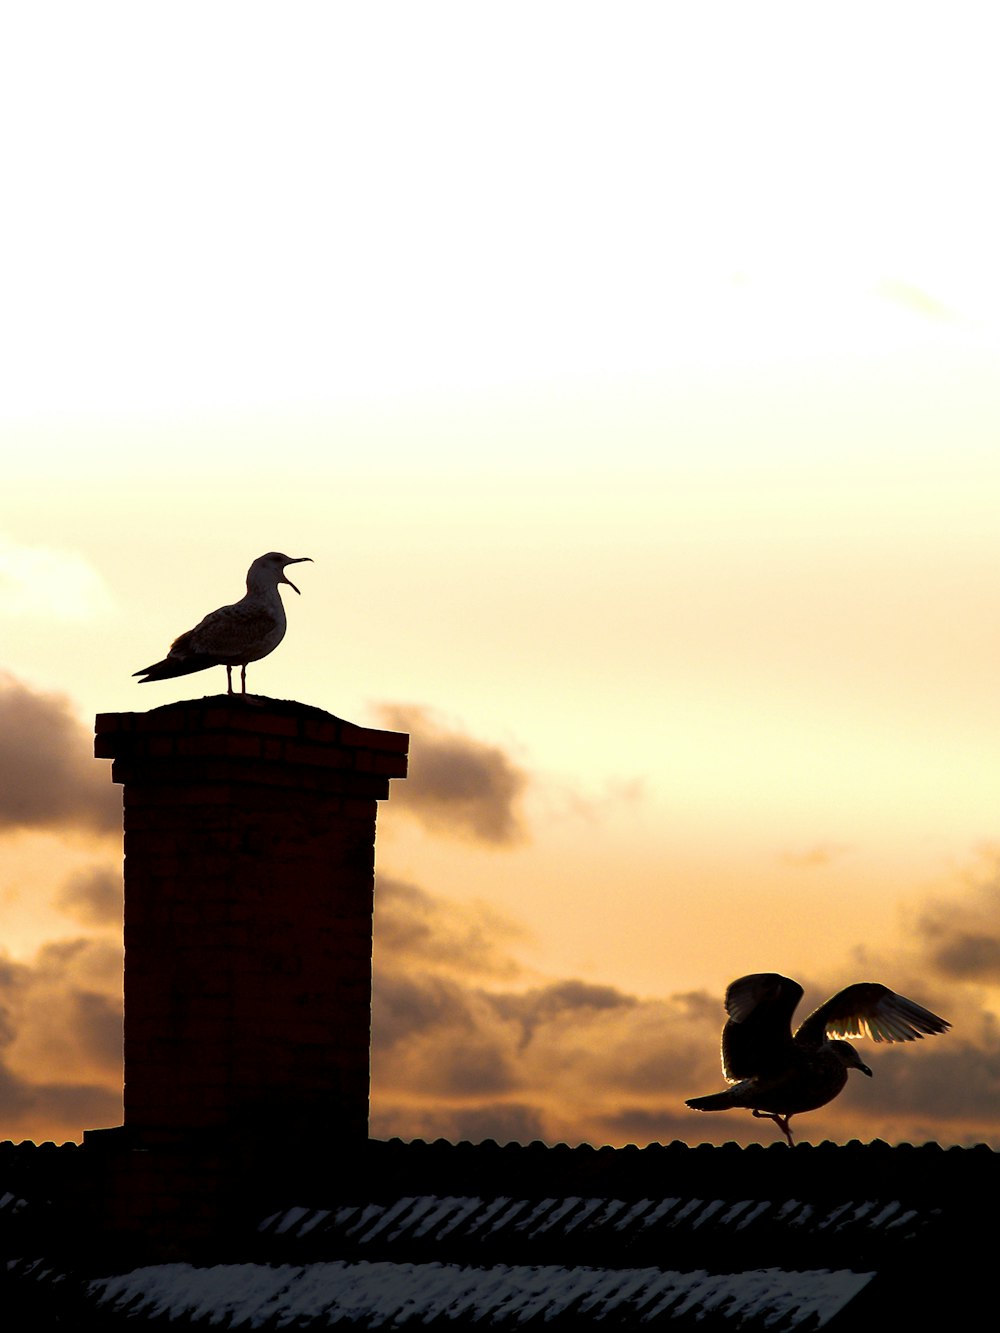 Dois pássaros na chaminé e no telhado durante a hora dourada